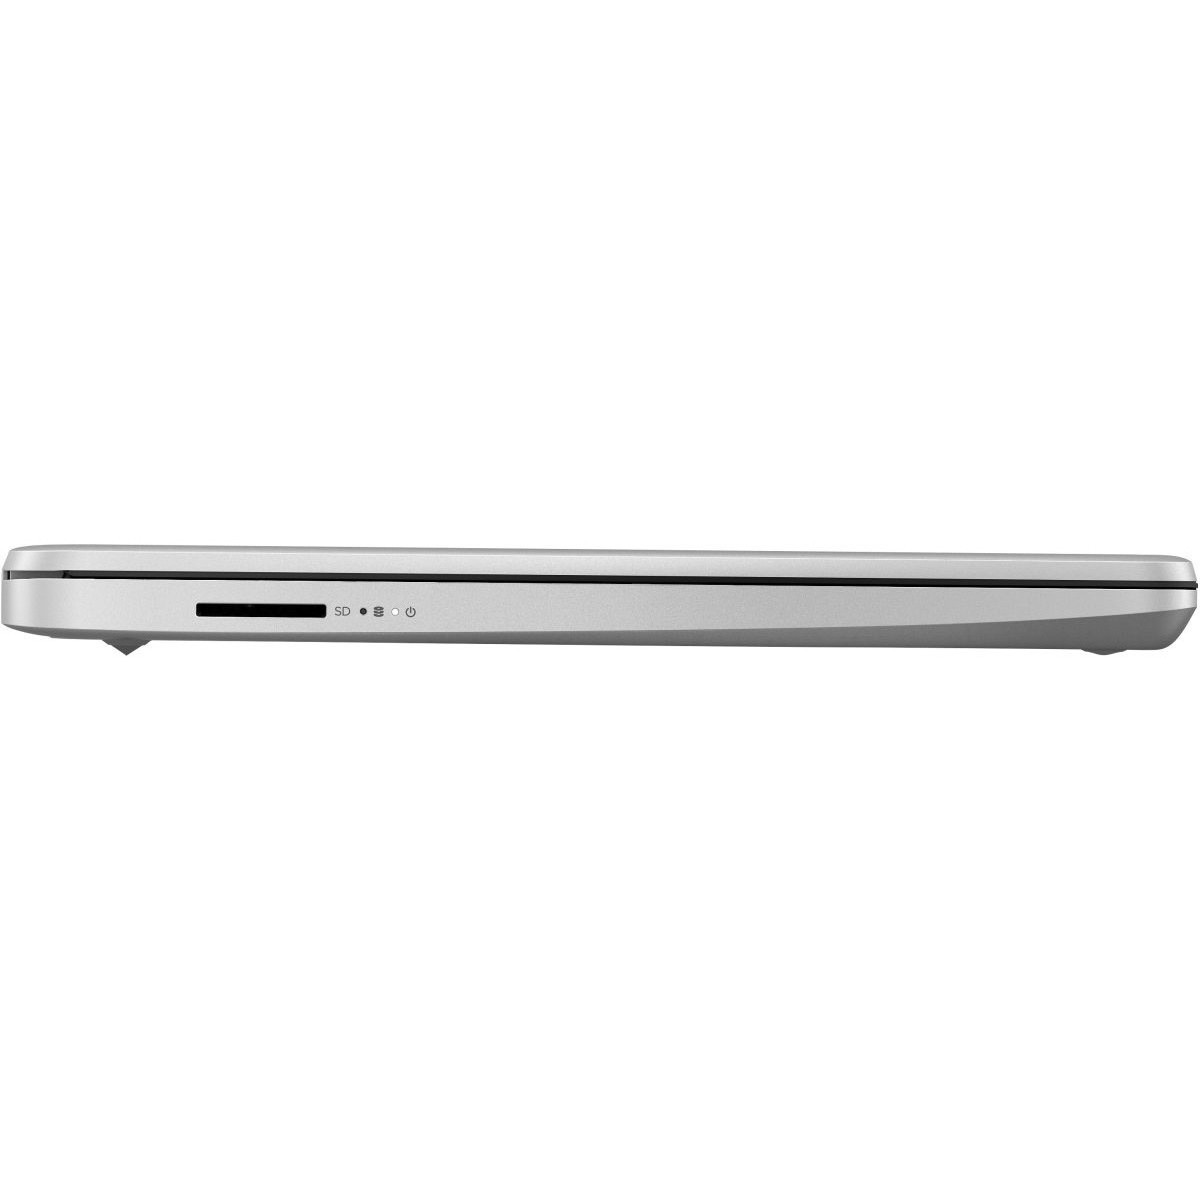 Купить Ноутбук Hp 340s G7